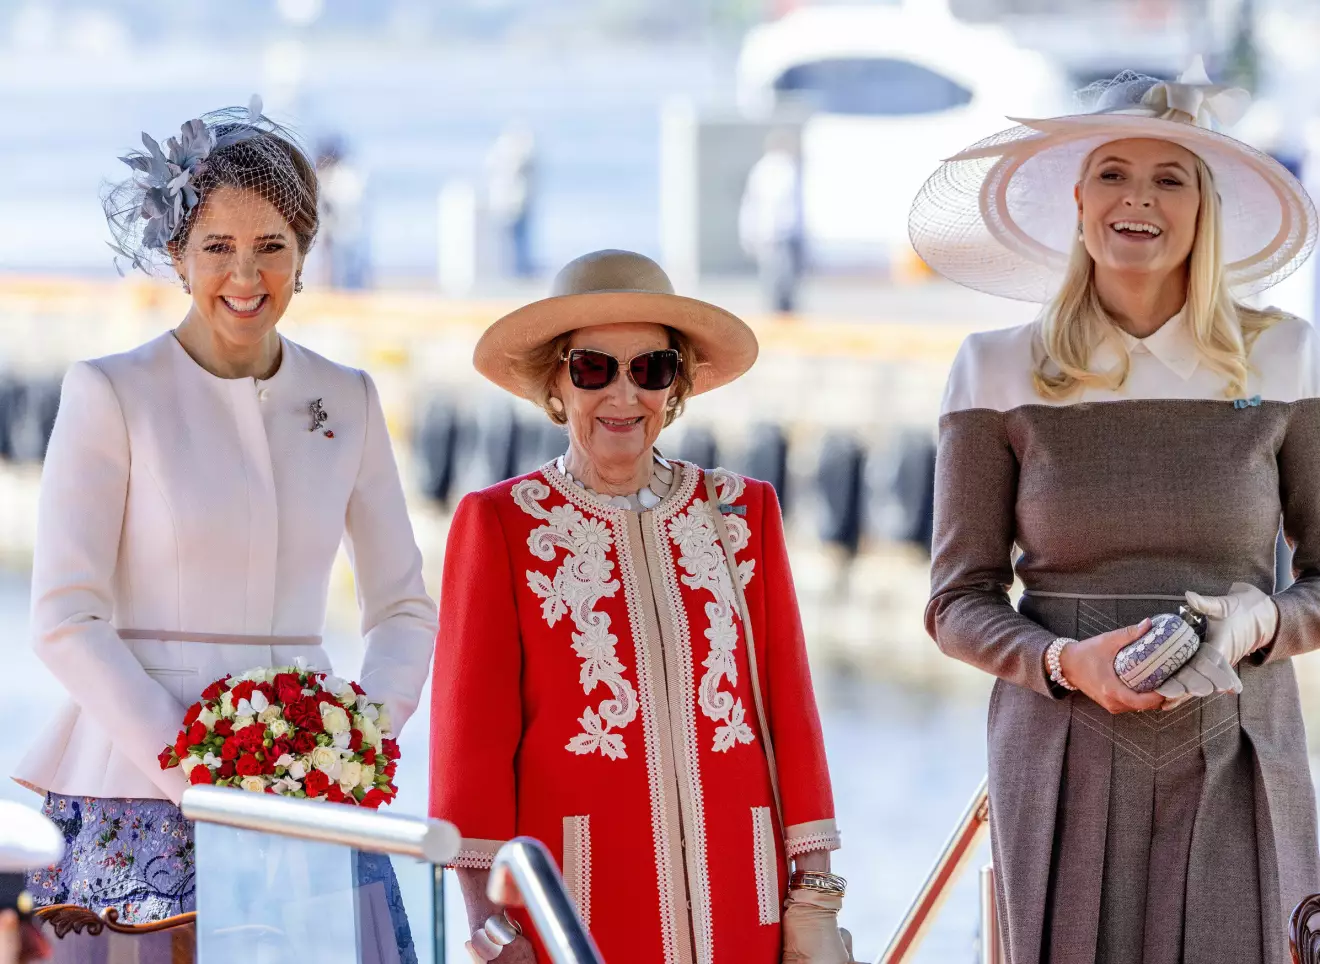 Drottning Mary, drottning Sonja och kronprinsessan Mette-Marit